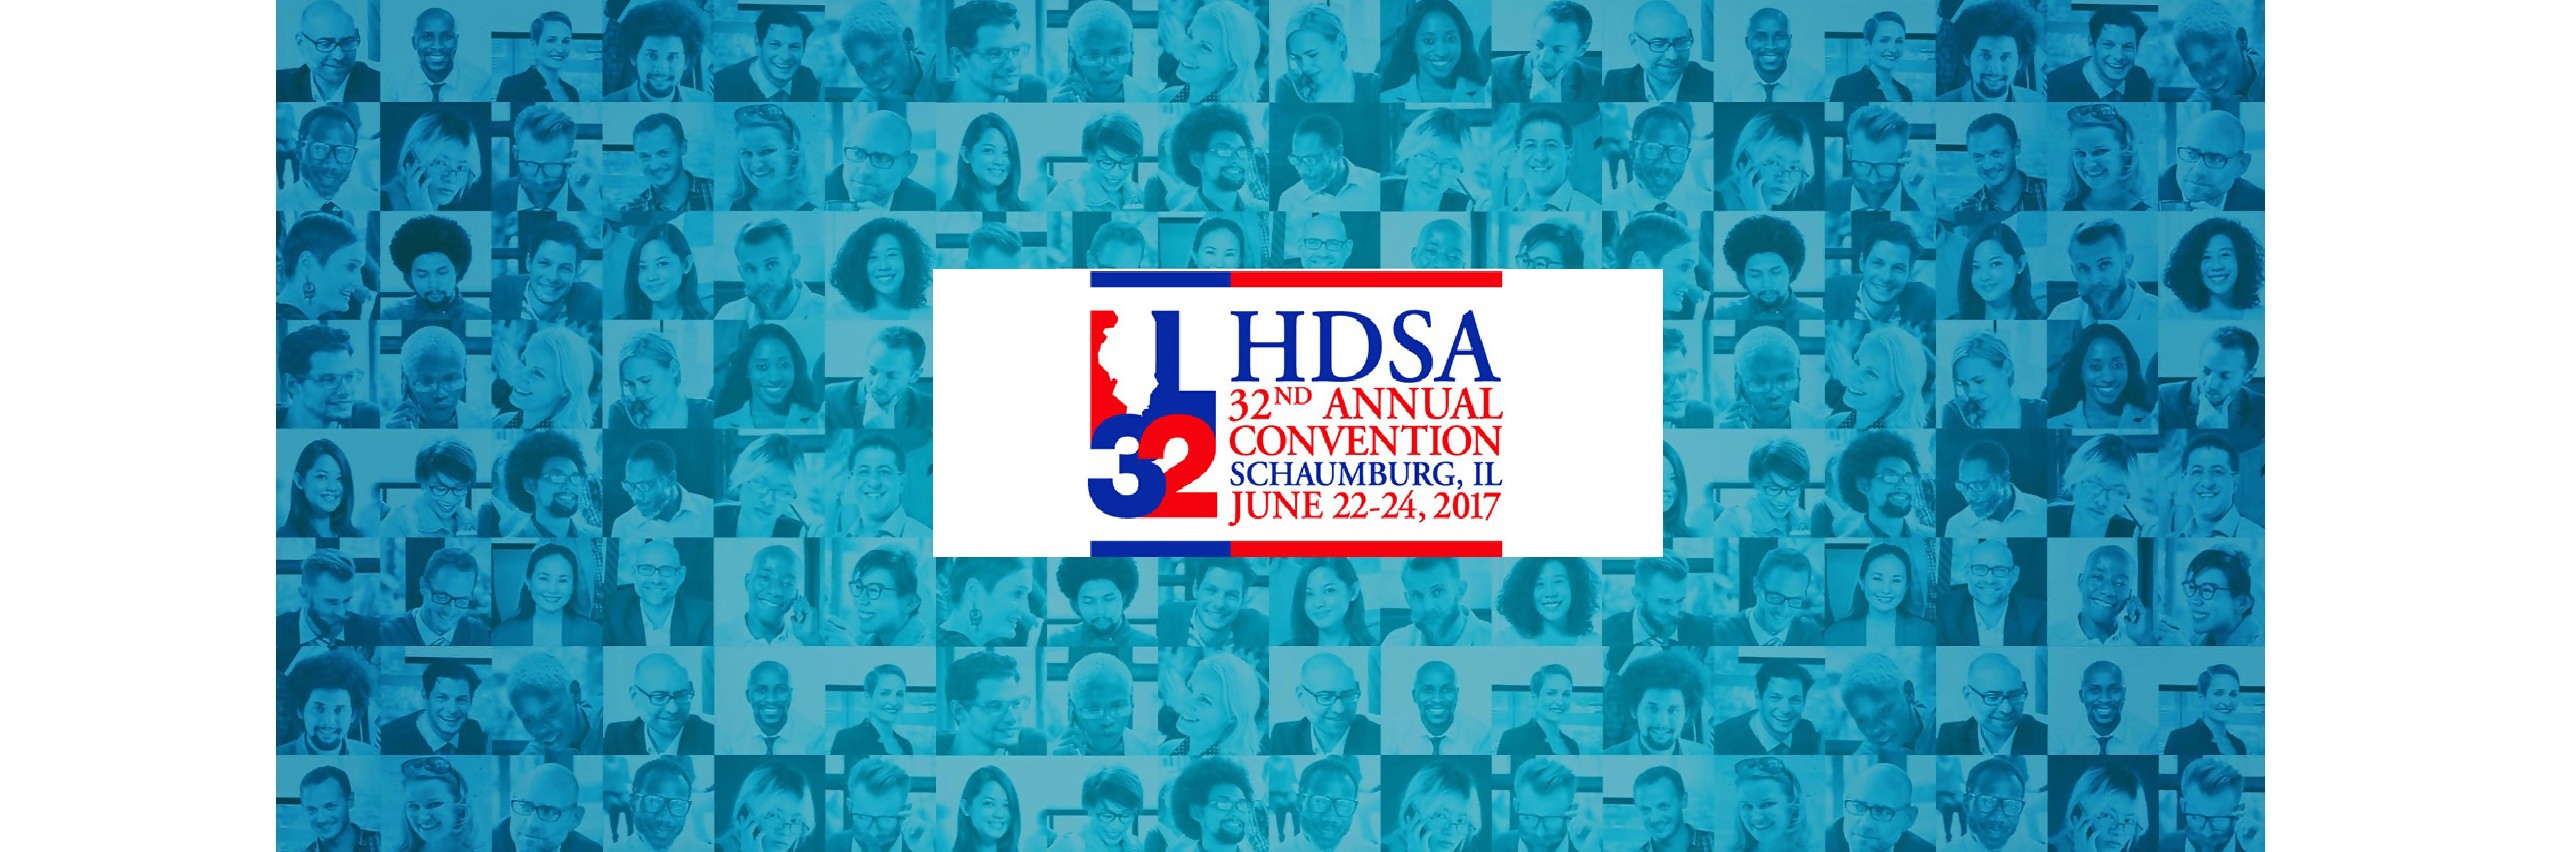 HDSA 2017 rm2